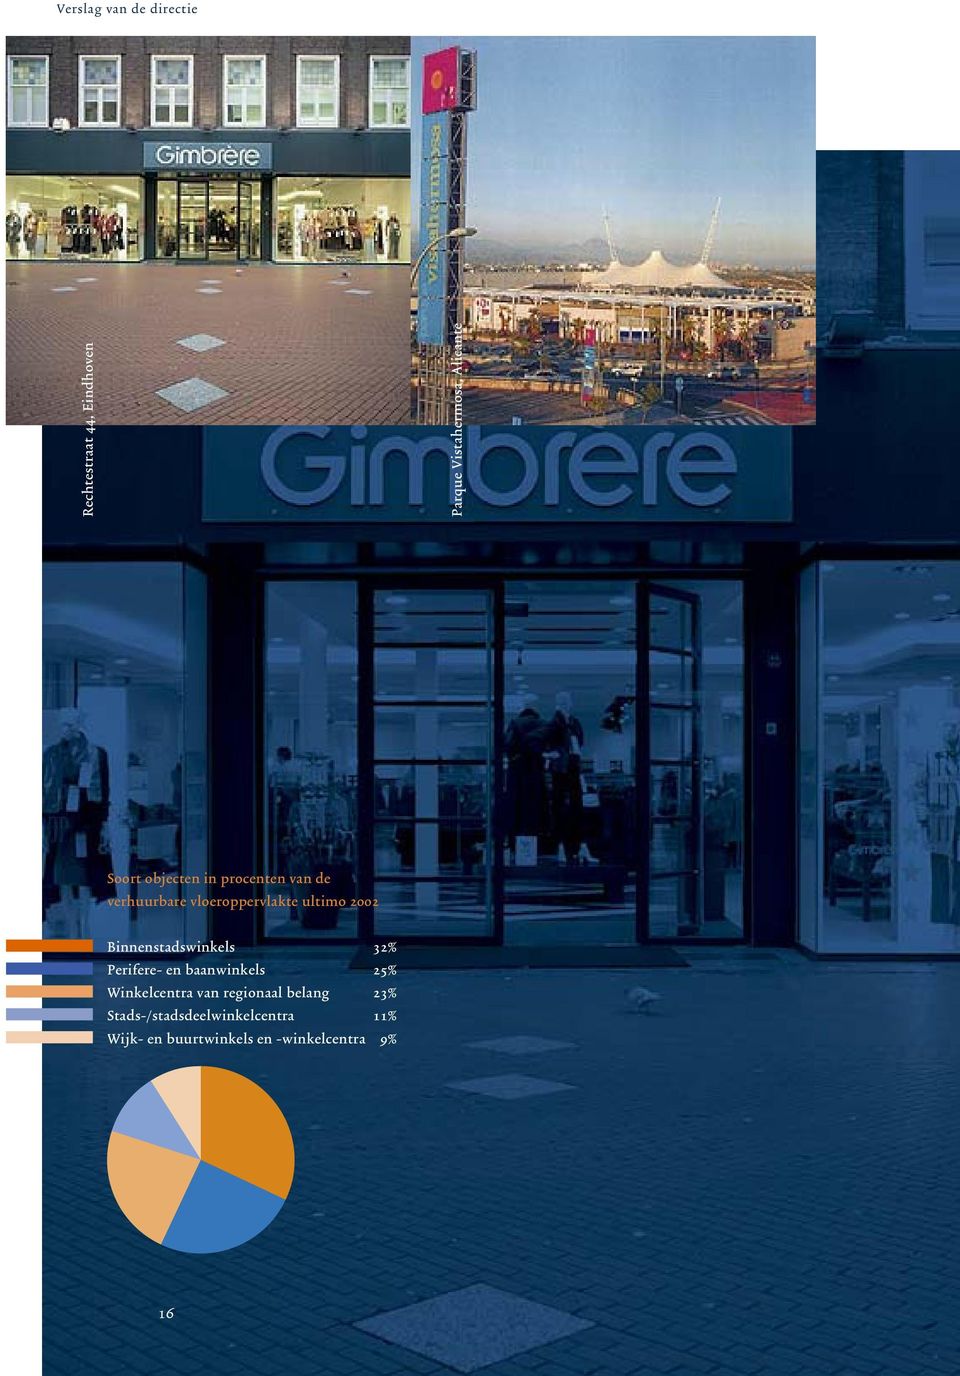 Binnenstadswinkels 32% Perifere- en baanwinkels 25% Winkelcentra van regionaal